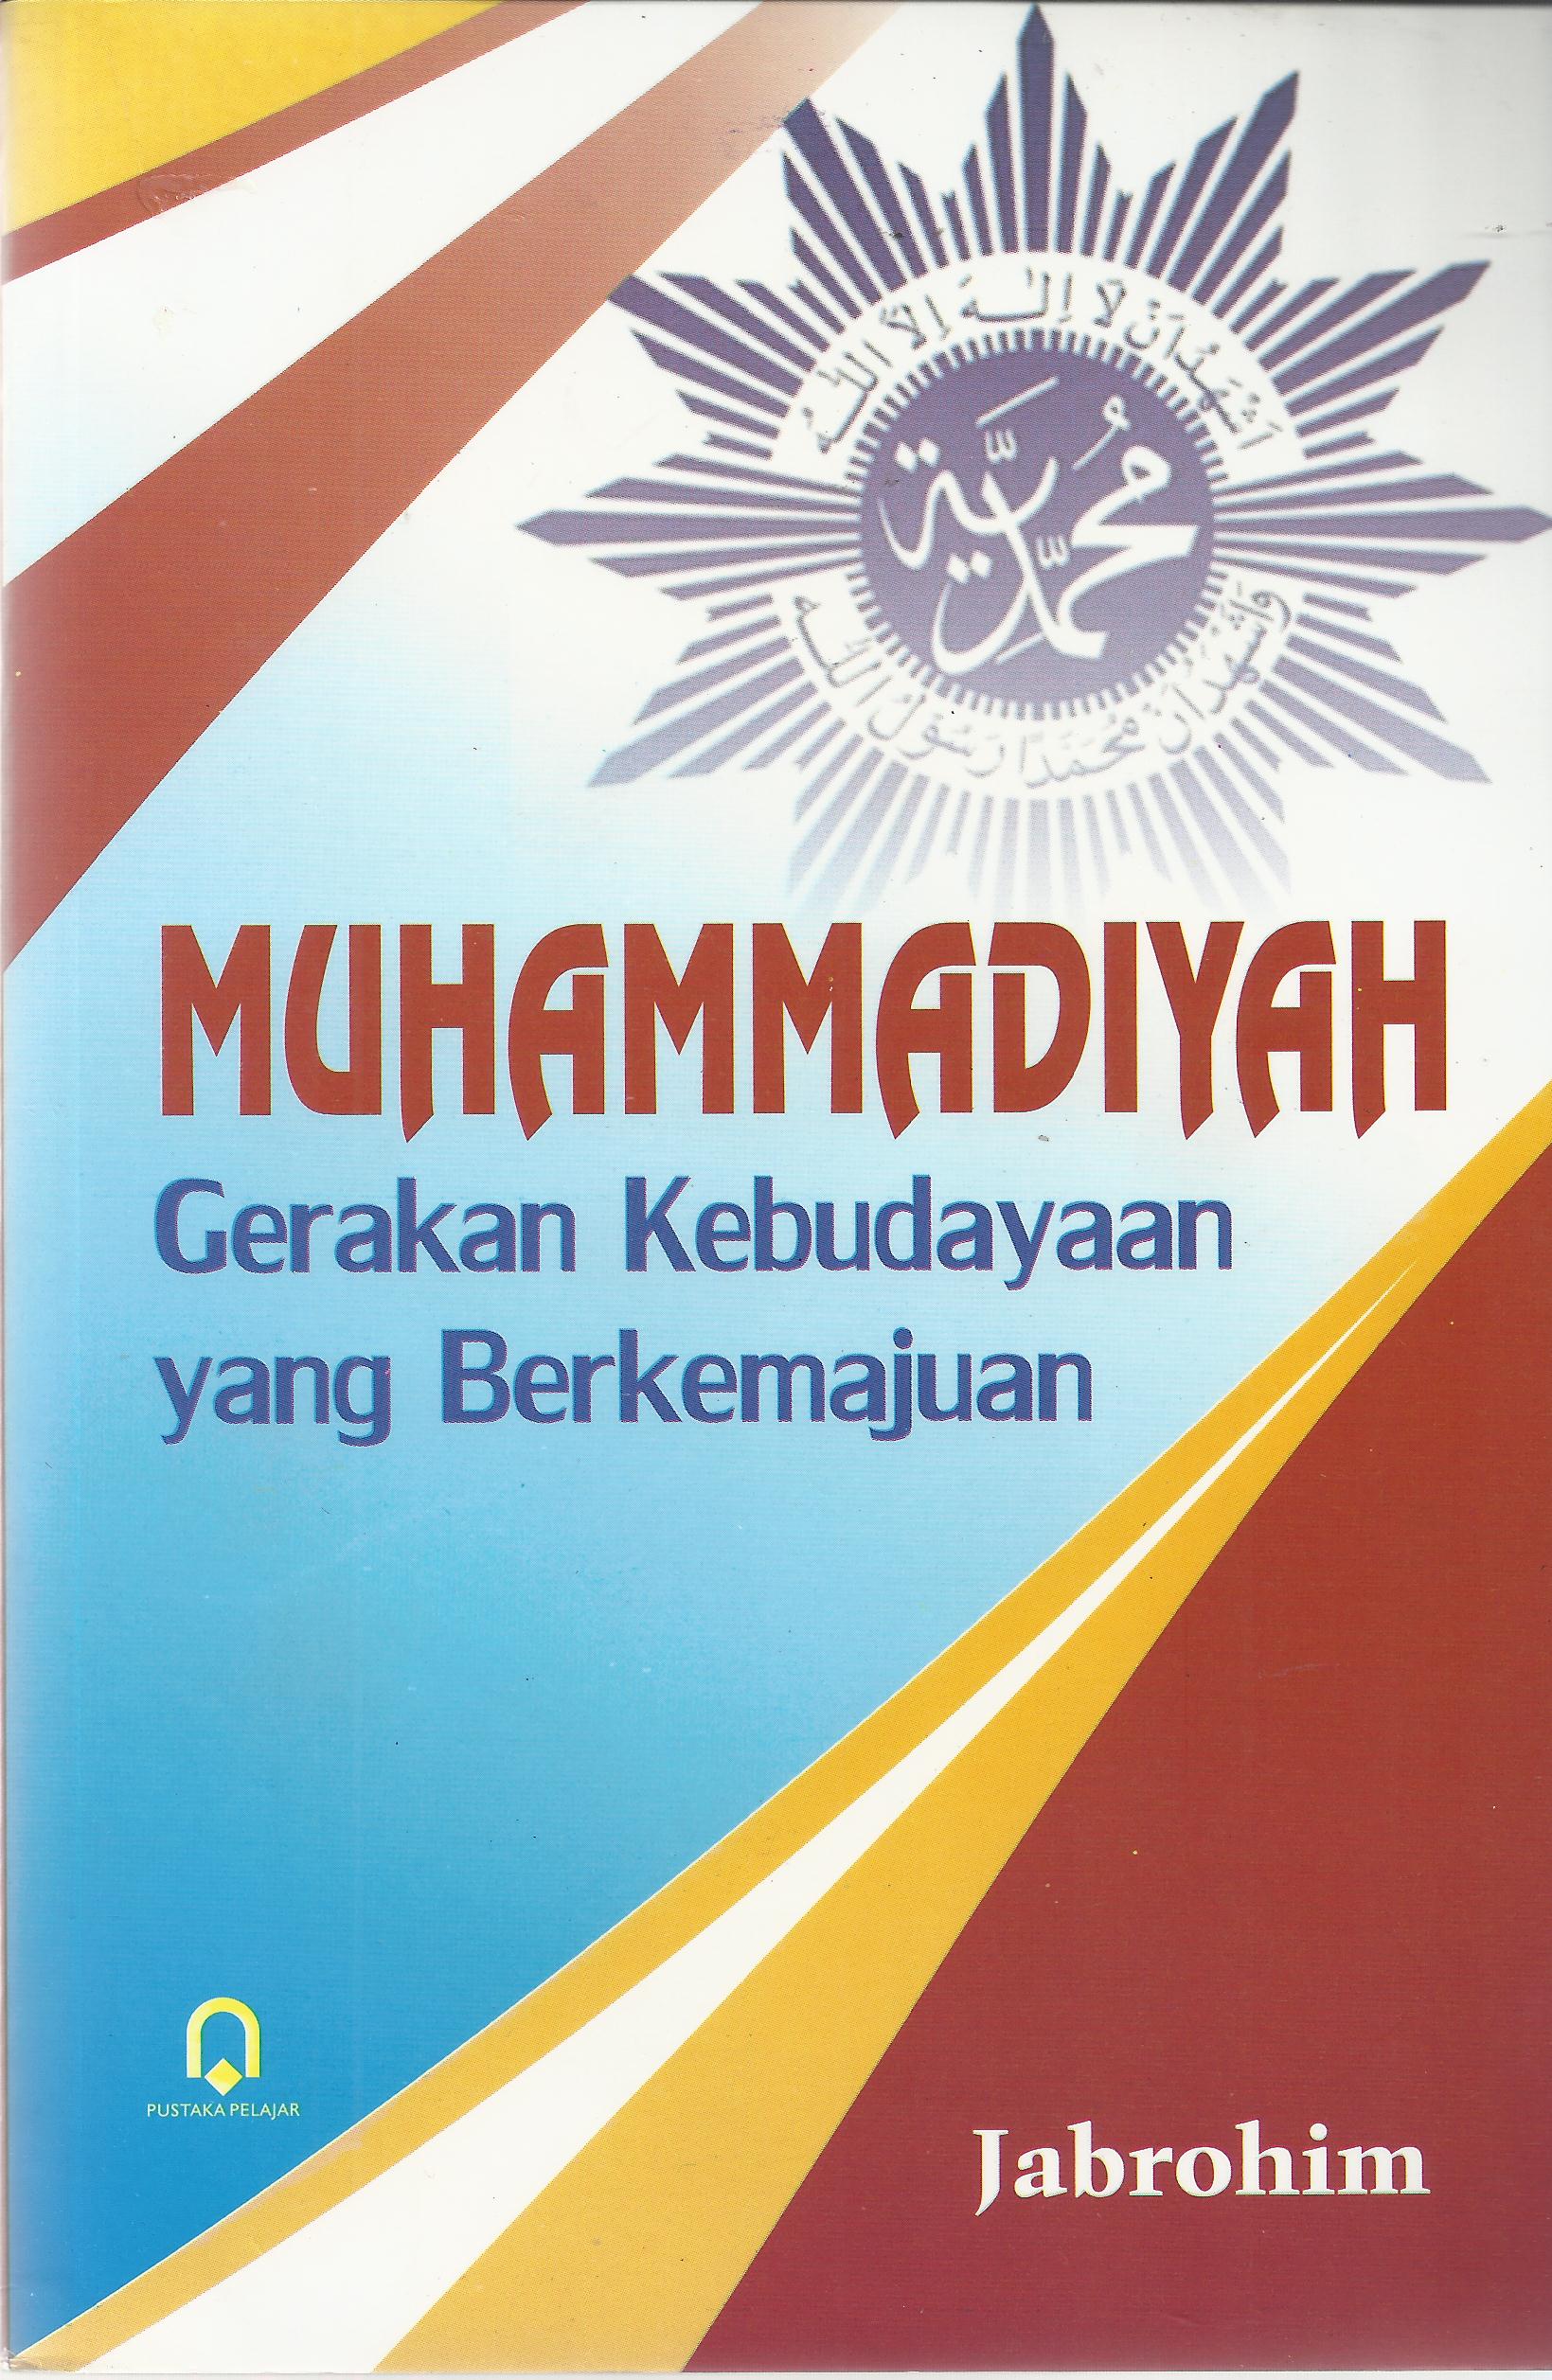 Muhammadiyah Gerakan Kebudayaan yang Berkemajuan